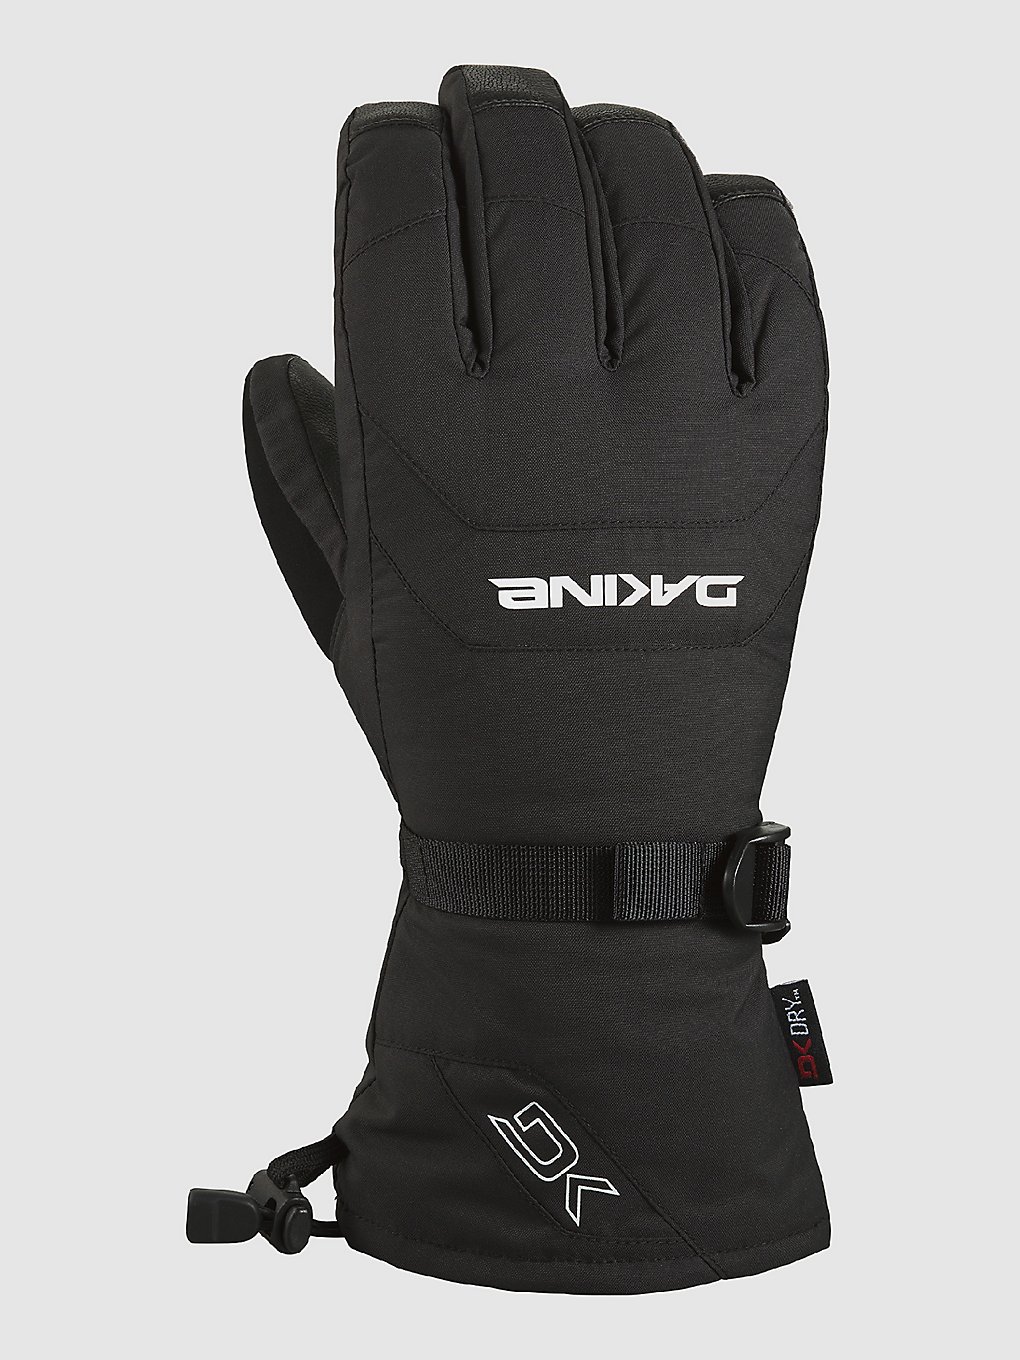 Dakine Leather Scout Handschuhe black kaufen